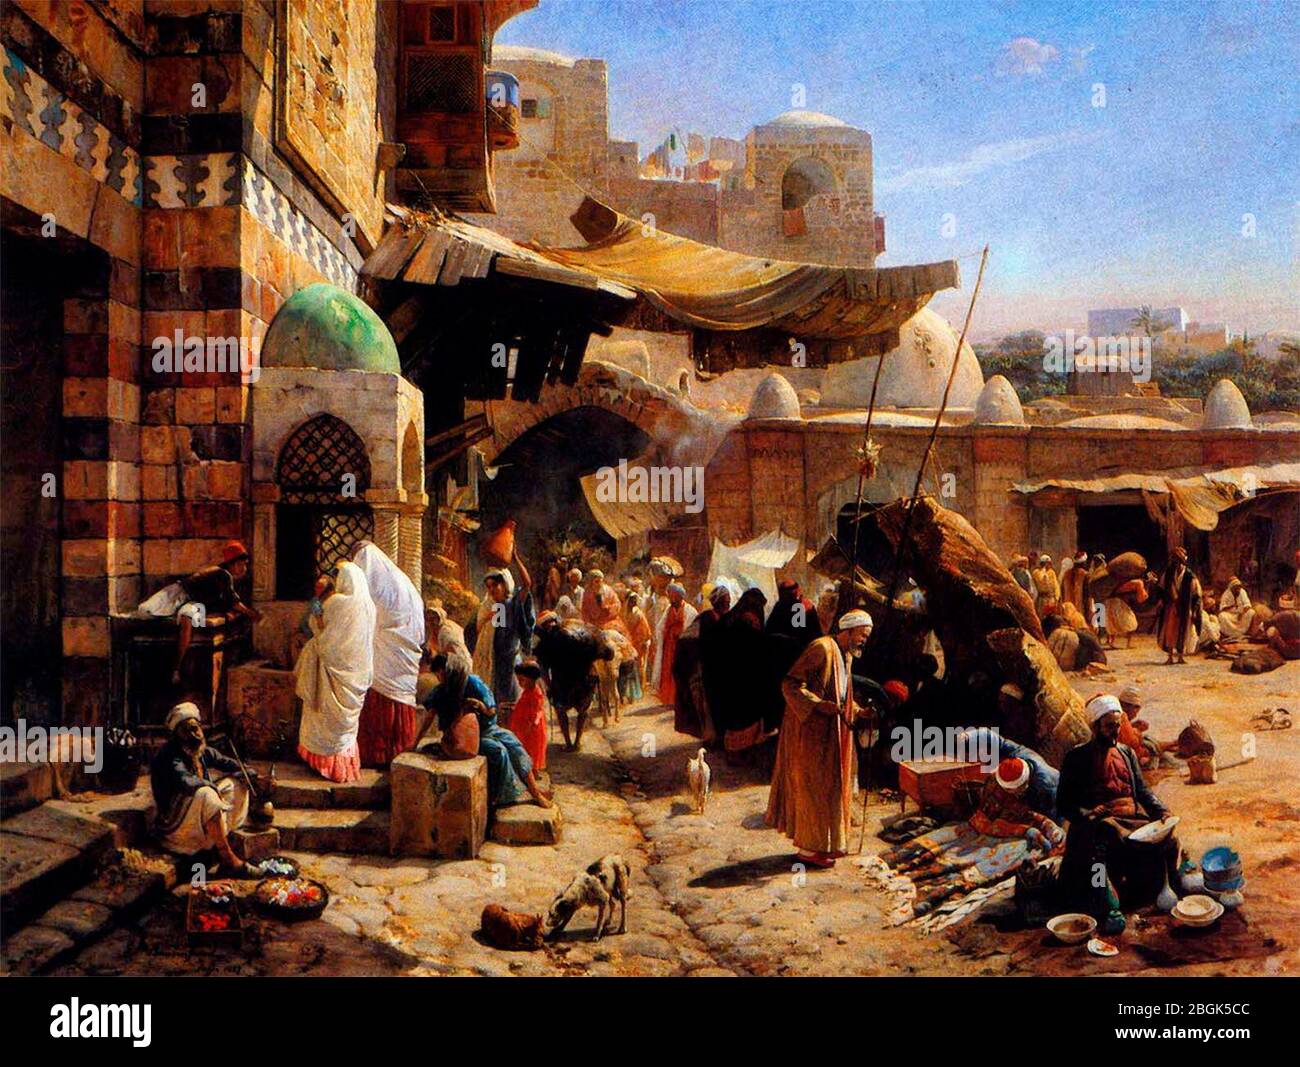 Market at Jaffa - Gustav Bauernfeind, 1877 Stock Photo